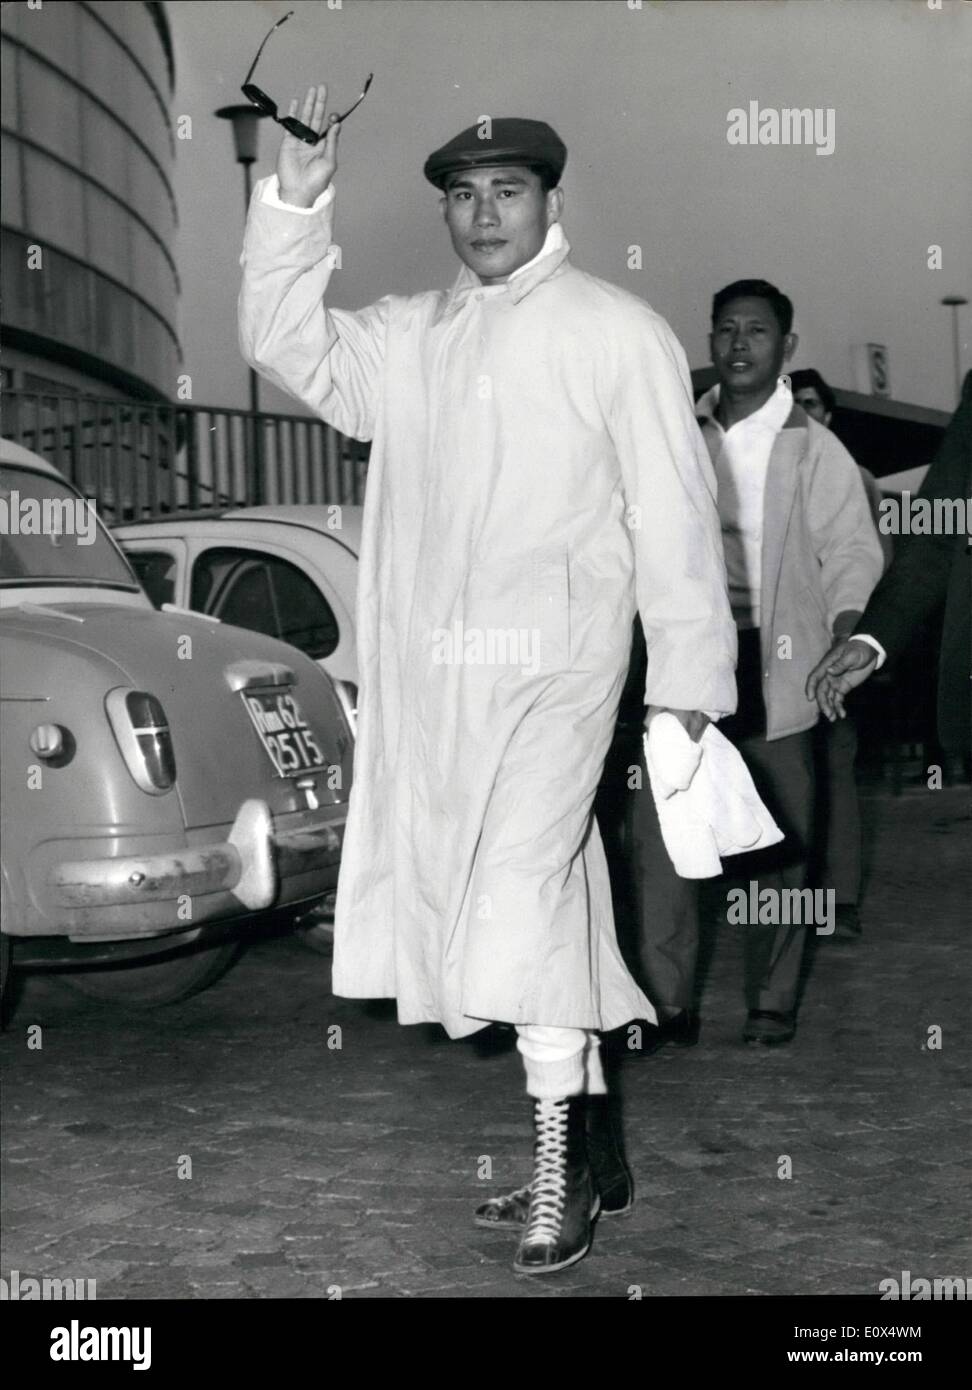 Avril 04, 1965 - champion du monde bantam Thailandia Pone Kingpetch qui rencontrera l'italien Salvatore Burruni boxeur champion d'Europe Banque D'Images